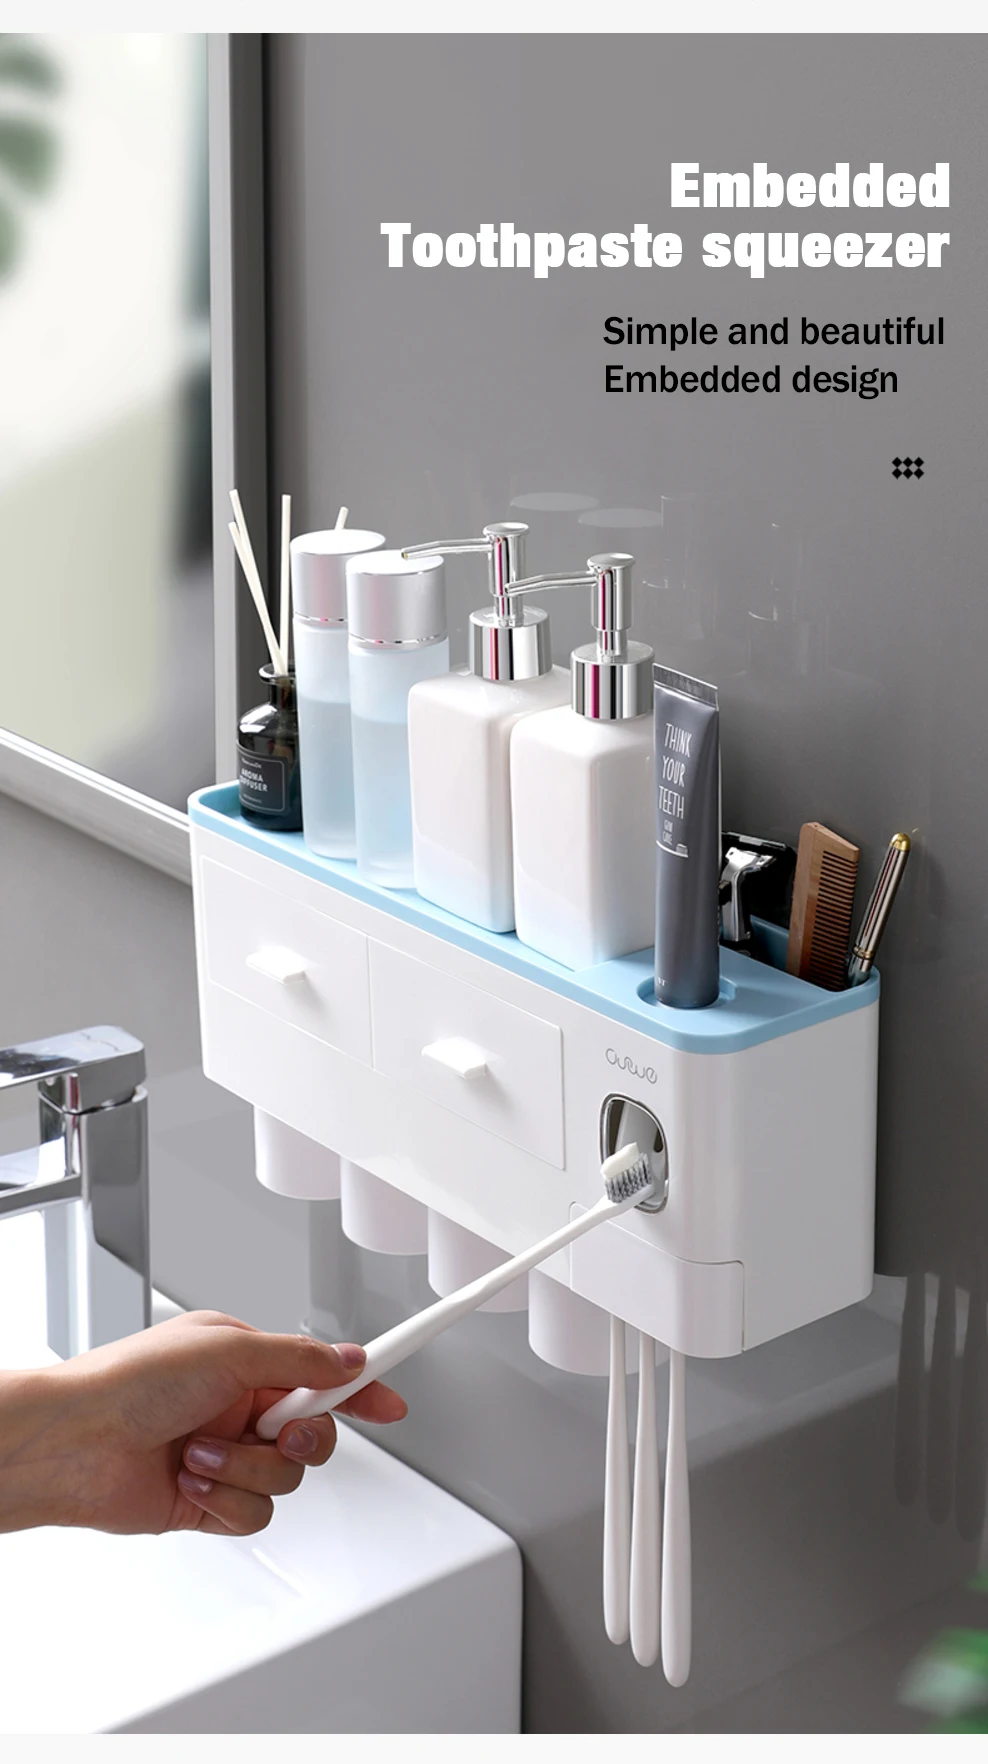 Автоматический Дозатор зубной пасты соковыжималка настенный стеллаж для хранения зубных щеток Держатель с чашкой набор аксессуаров для ванной комнаты